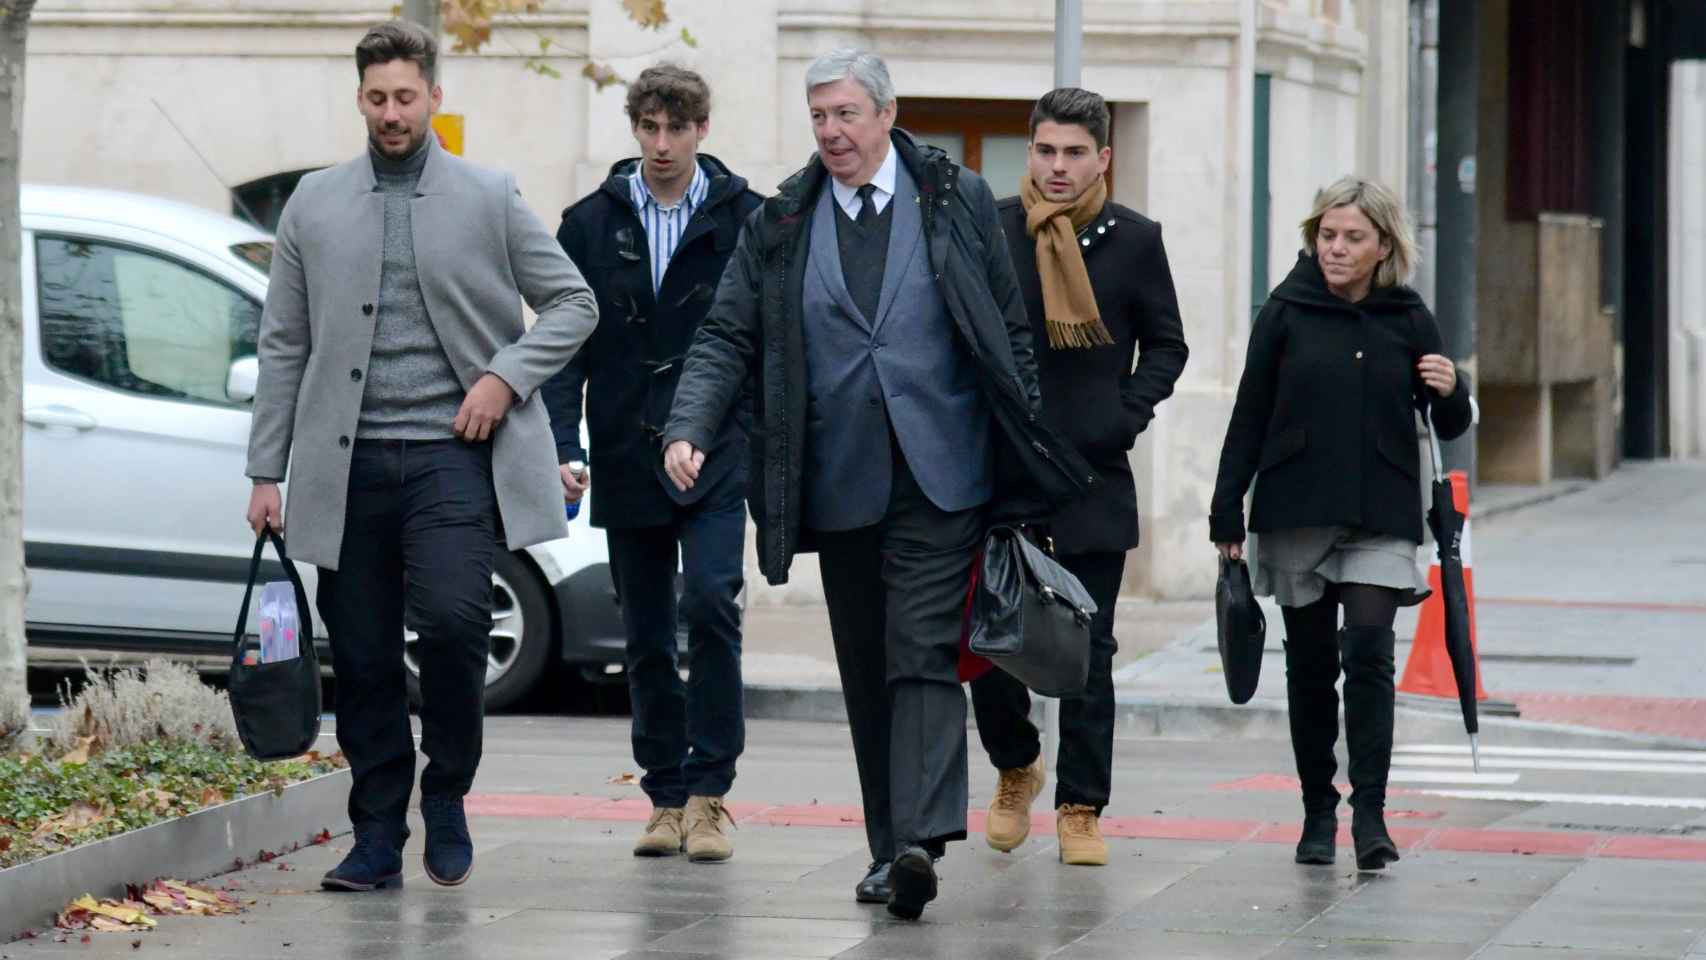 Raúl Calvo, Víctor Rodríguez, y Carlos Cuadrado, acompañados por los abogados de los dos primeros, a su llegada al juzgado en 2019